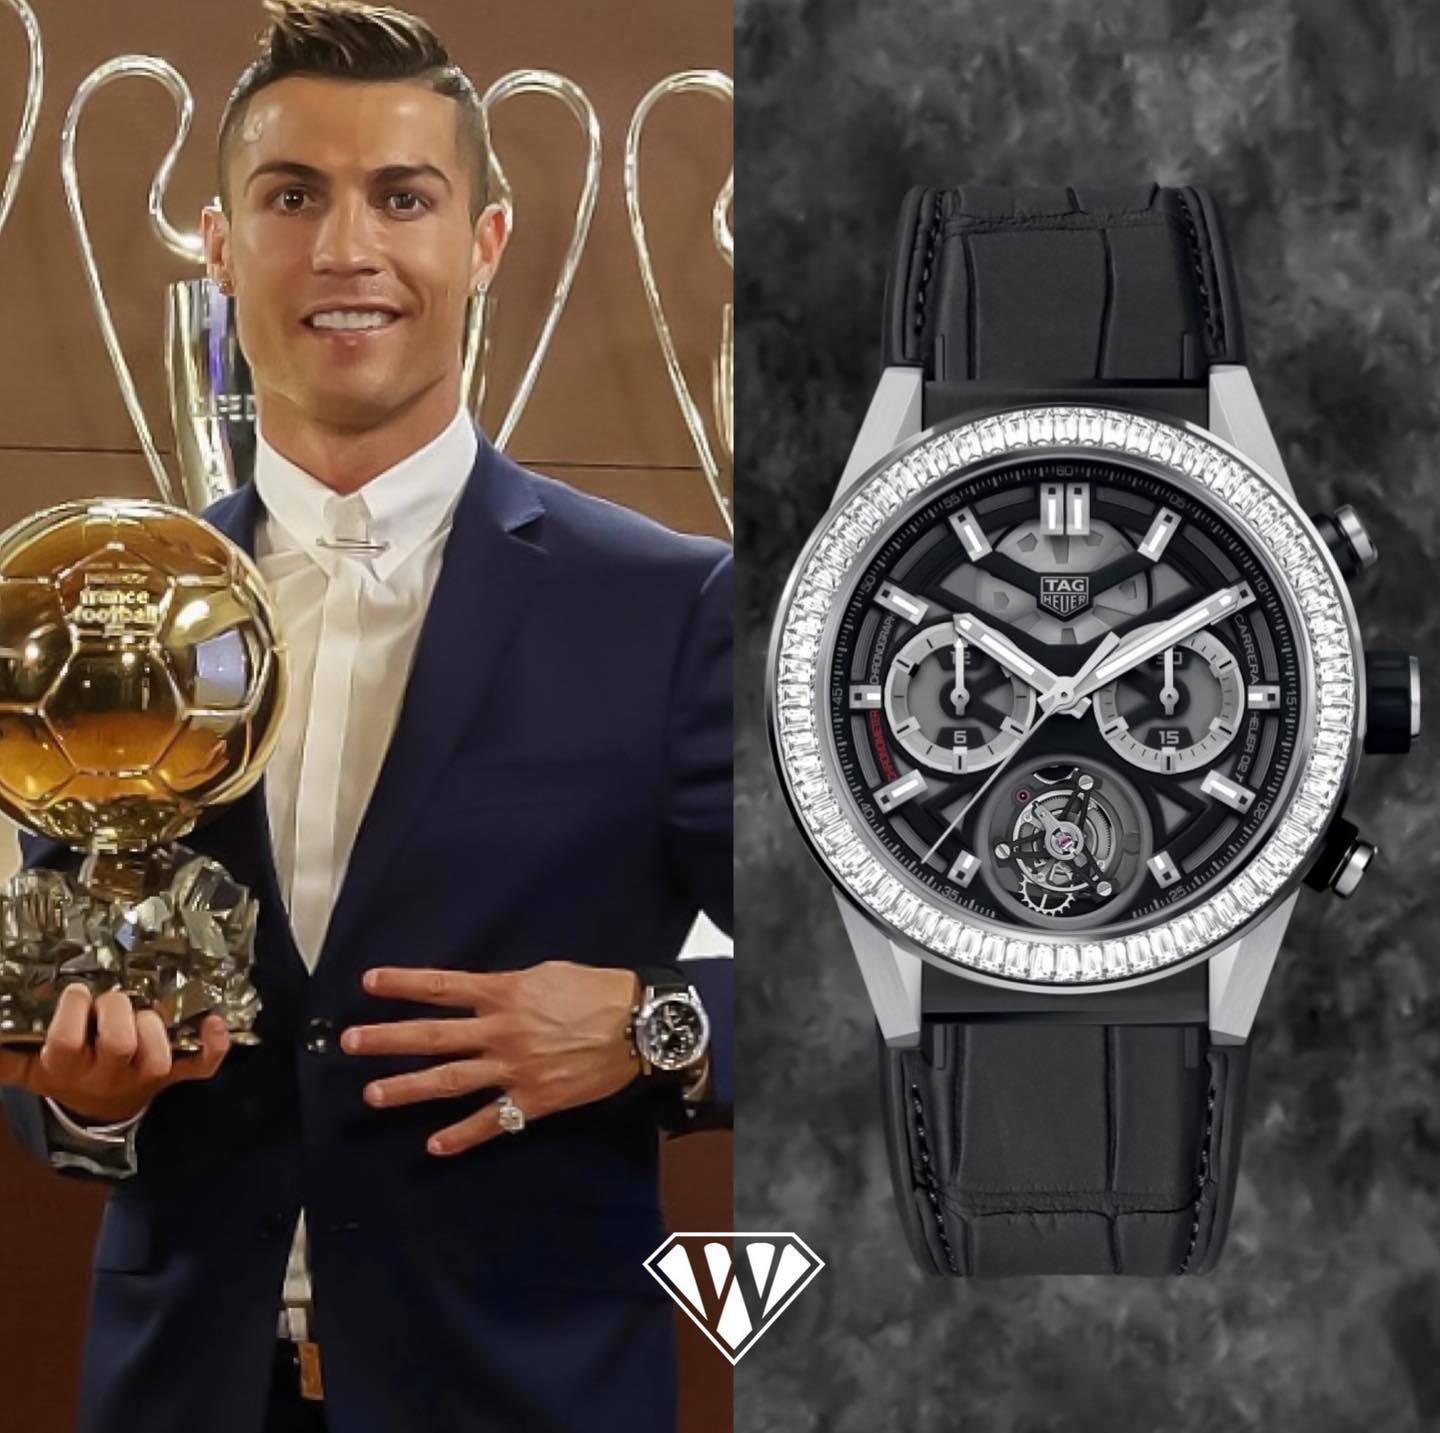 Ronaldo còn chứng minh sức hấp dẫn của mình đối với các hãng đồng hồ xa xỉ khi trở thành gương mặt đại diện cho thương hiệu TAG Heuer. Anh sở hữu thiết kế Carrera Milkro TourbillonS trị giá 200.000 USD (khoảng 4,5 tỷ đồng) với điểm nhấn 'CR7' được khắc trên đồng hồ dành riêng cho anh.